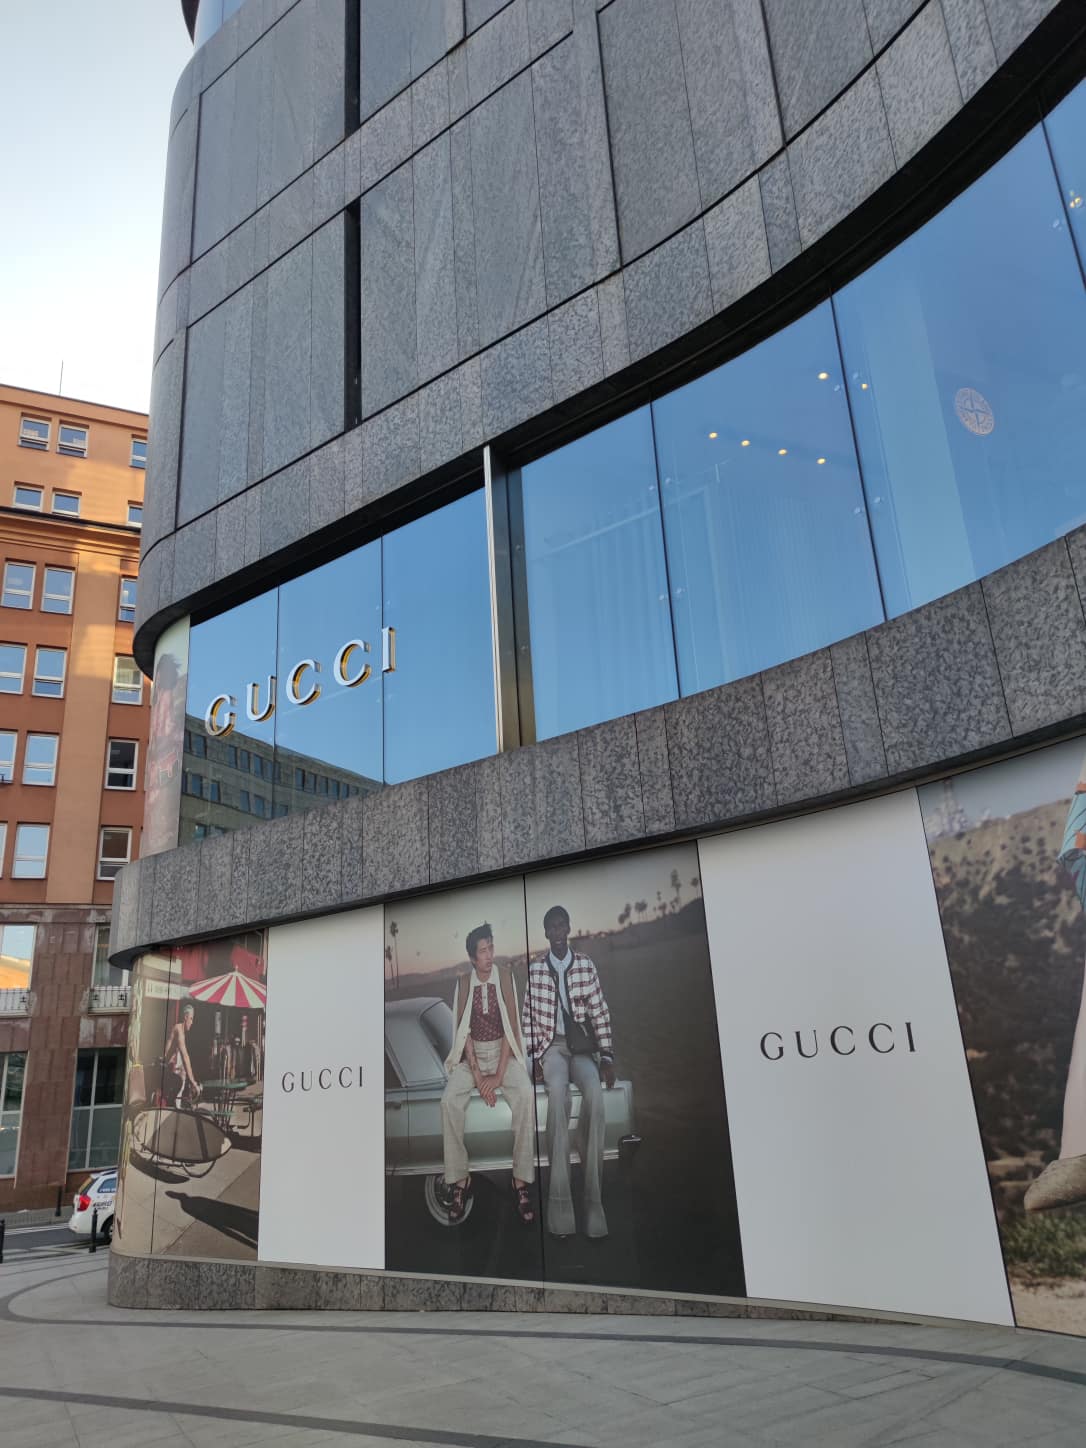 Butik Gucci w Warszawie. Tak wygląda w środku - Kobieta